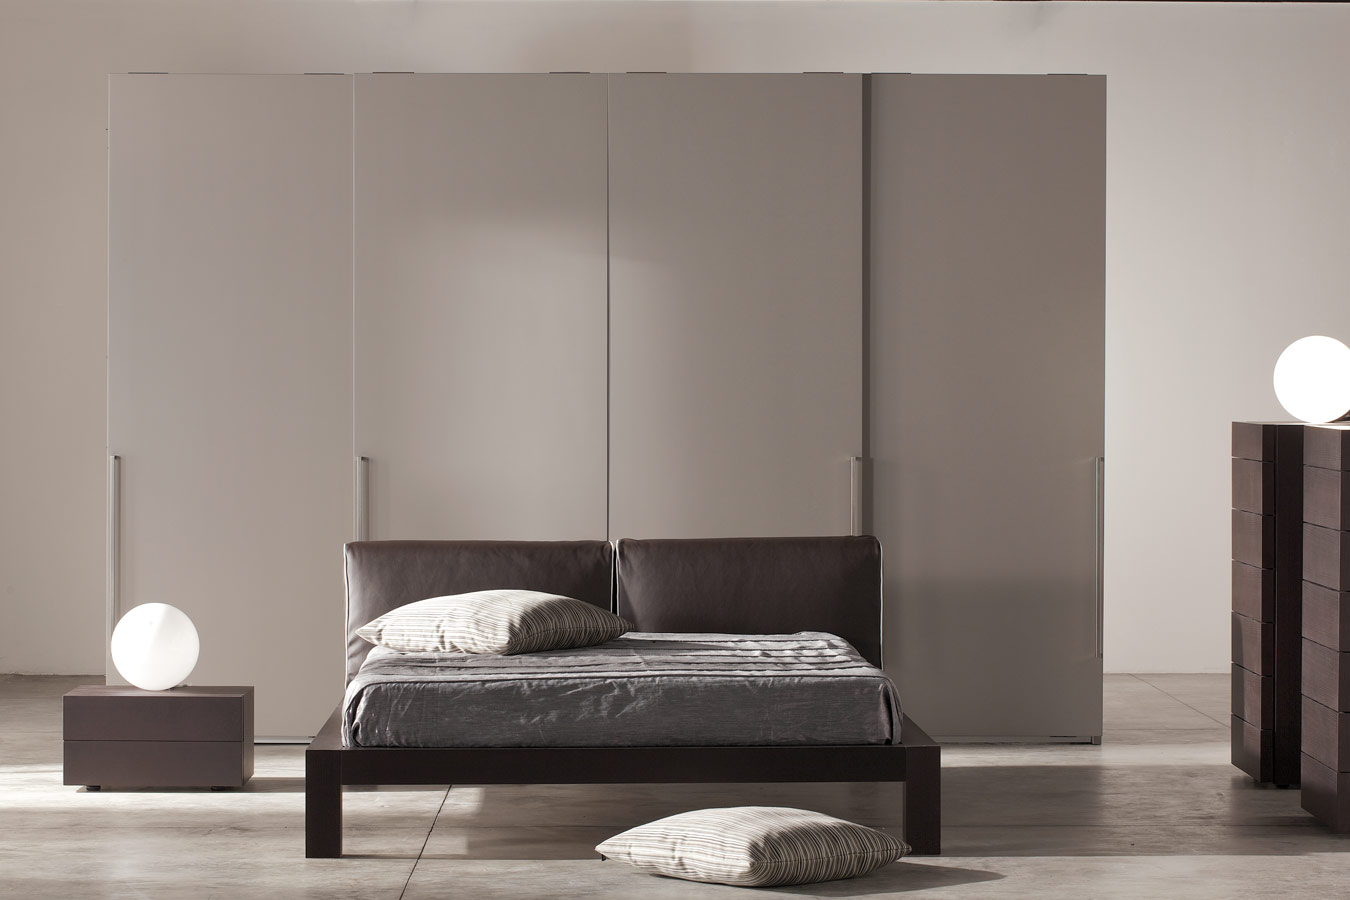 Moderne, grijze slaapkamer met bolle leeslampen